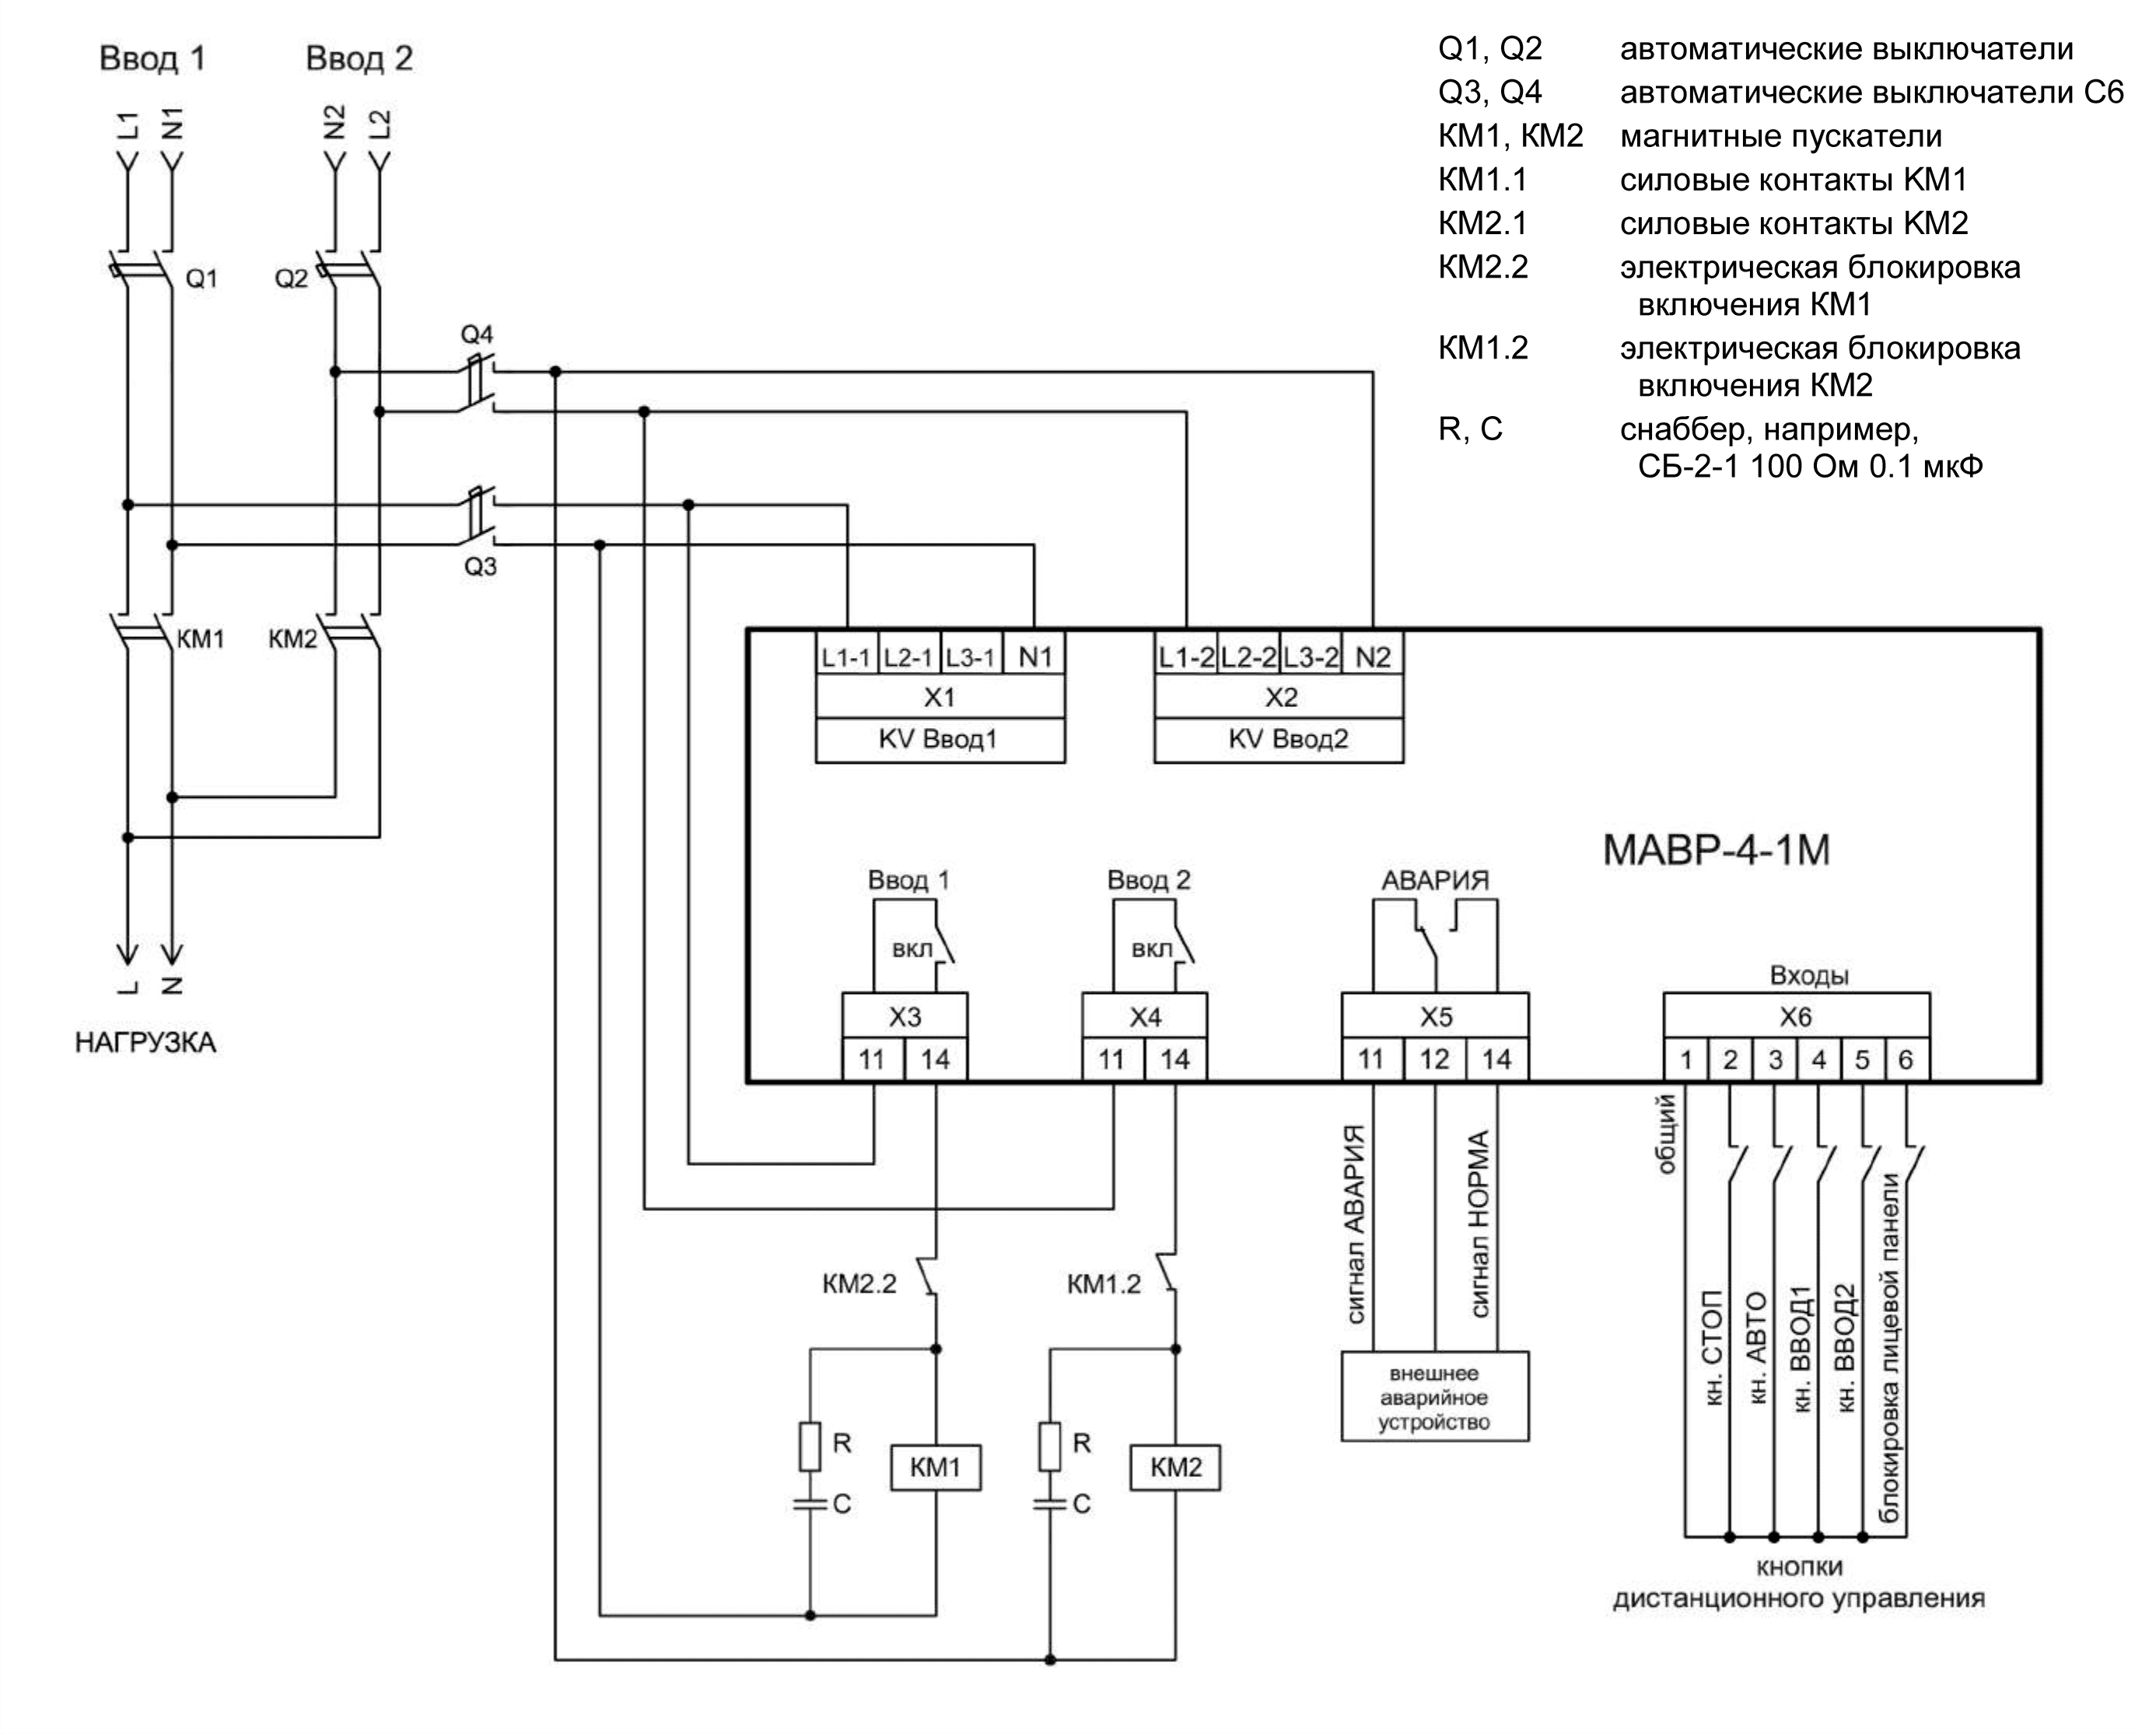 Схема АВР на магнитных пускателях 1 фазный ввод и 1 фазный ввод МАВР-4-1М